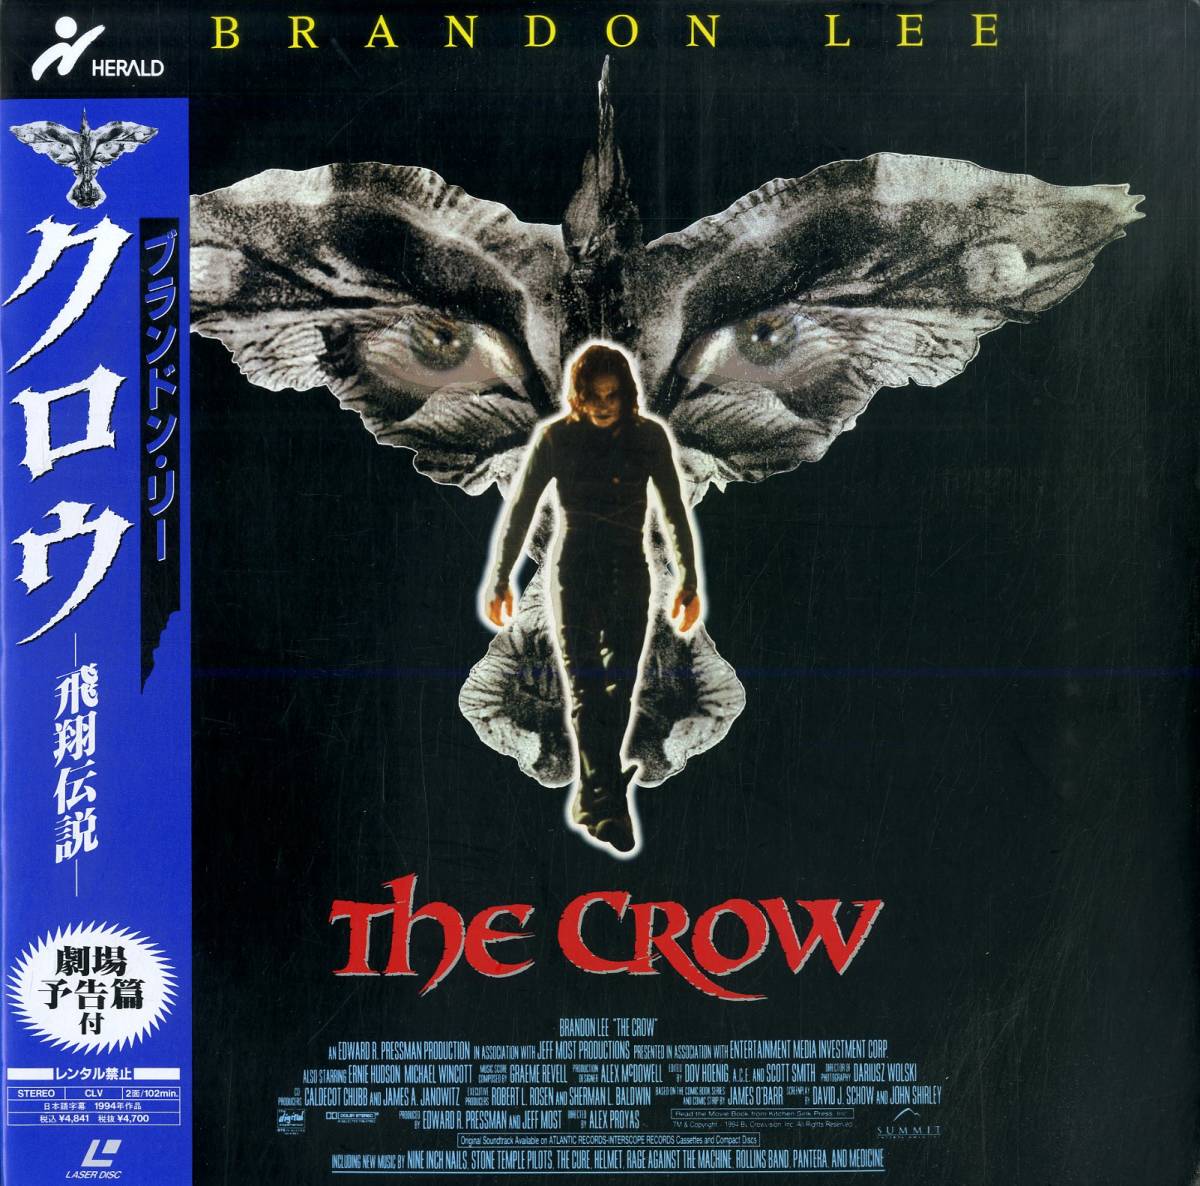 B00173729/LD/ブランドン・リー「クロウ -飛翔伝説- The Crow 1994 (1995年・PILF-7307)」_画像1